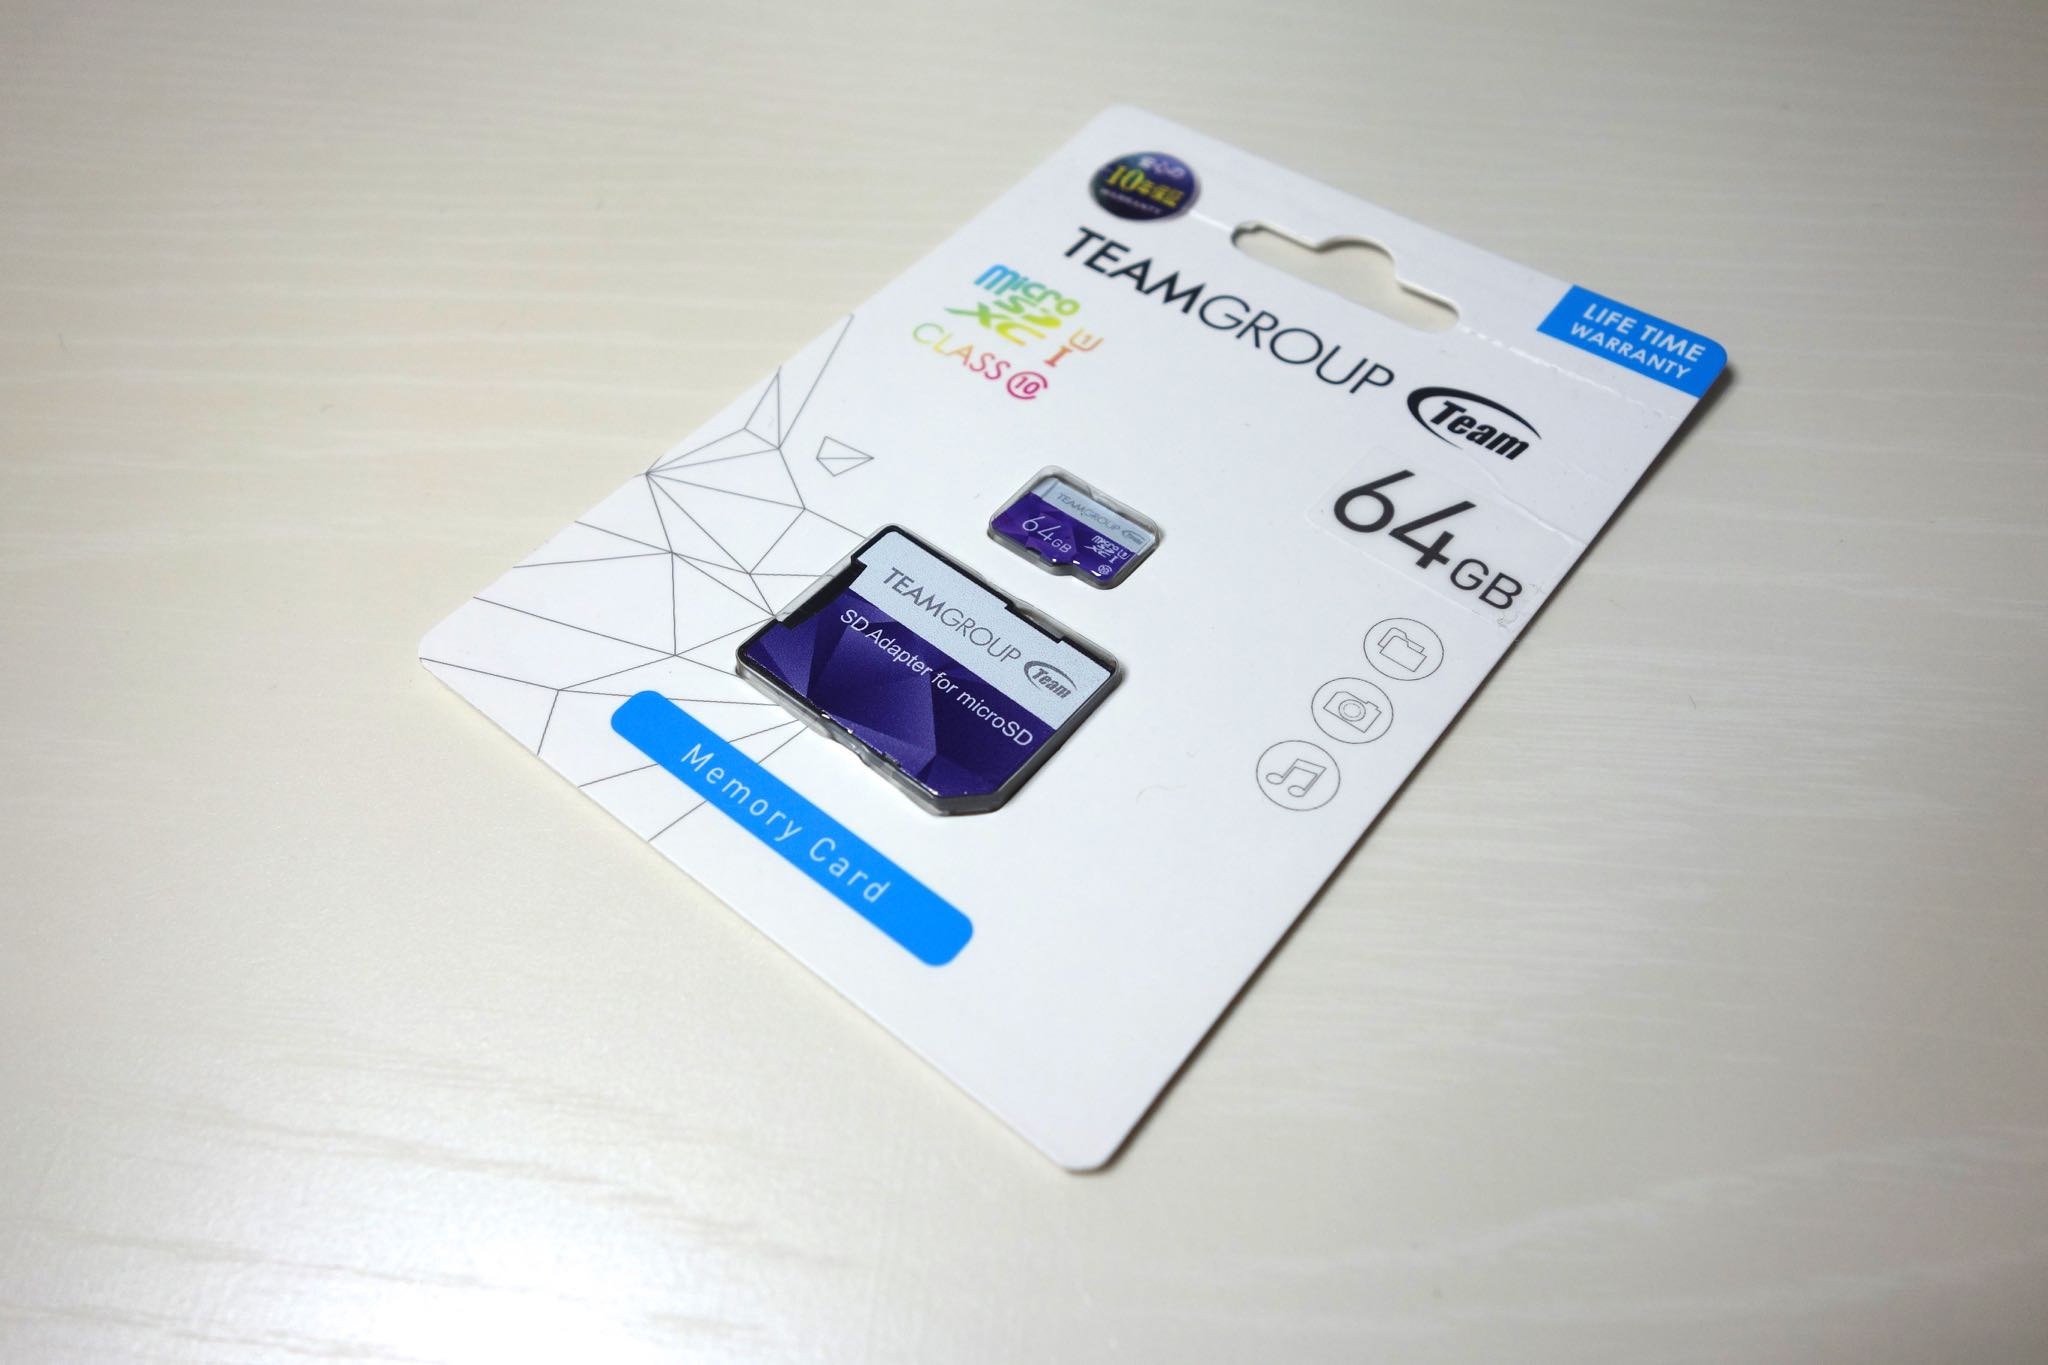 Teamの紫色のオシャレなmicroSDXC 64GBレビュー。2,080円で書き込み37MB/s、読み込み63MB/s | ガジェットショット